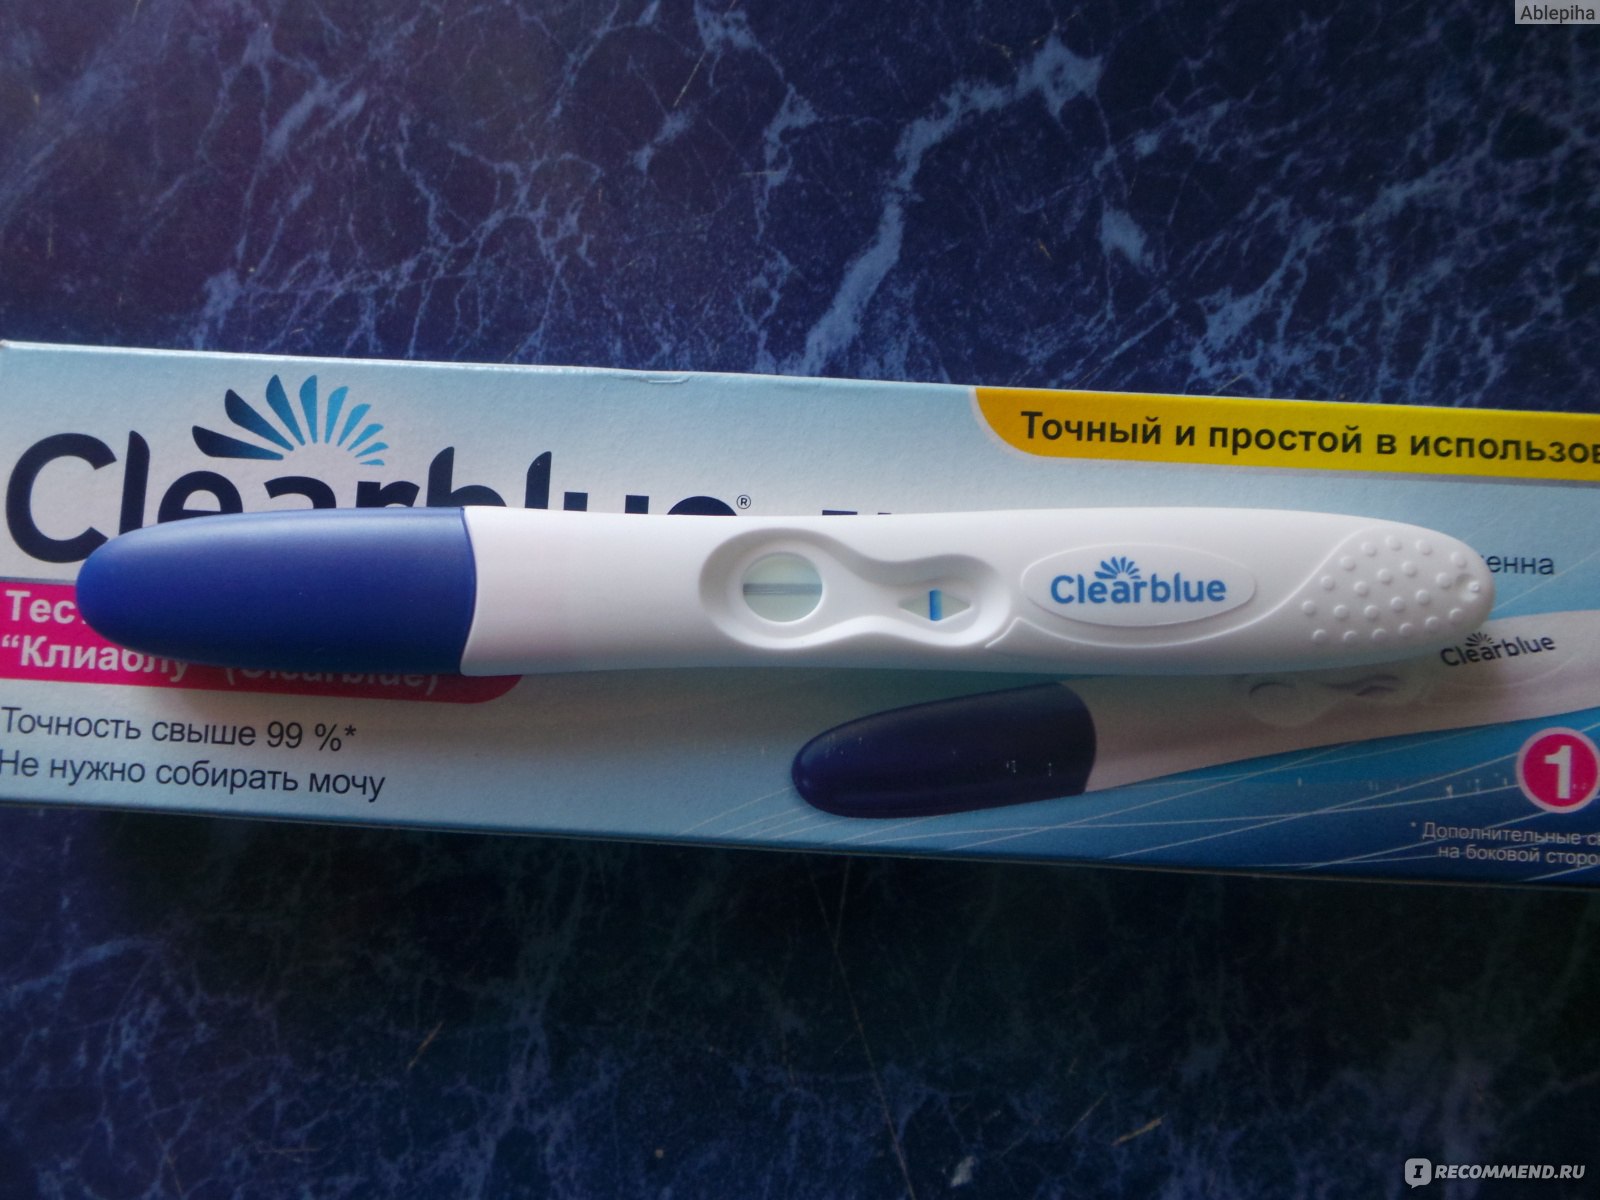 Тест на беременность clearblue положительный результат фото как выглядит положительный